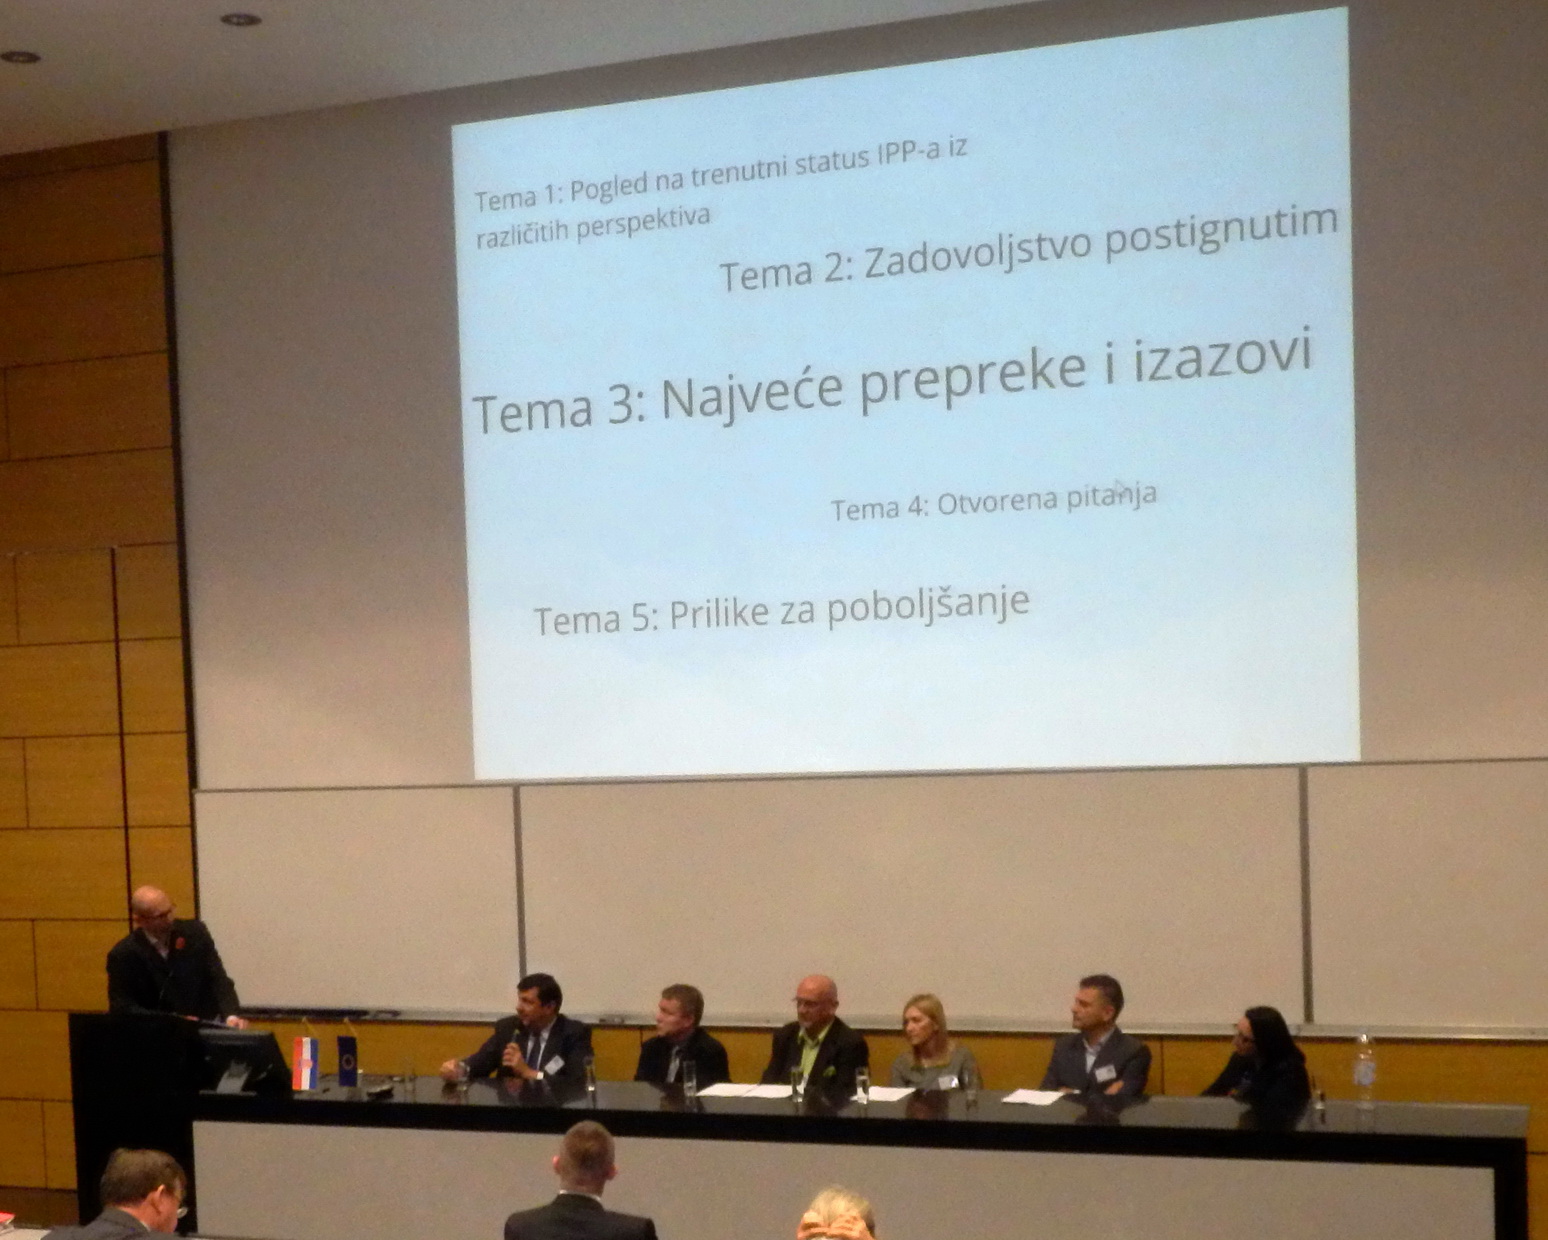 Slika prikazuje moderatora T. Cicelija i sudionike održanog okruglog stola pod nazivom "NIPP jučer, danas, sutra" T. Peteka, V. Cetla, I. Čižmeka, Lj. Marić, D. Šiška i T. Pušelj Ostroški.